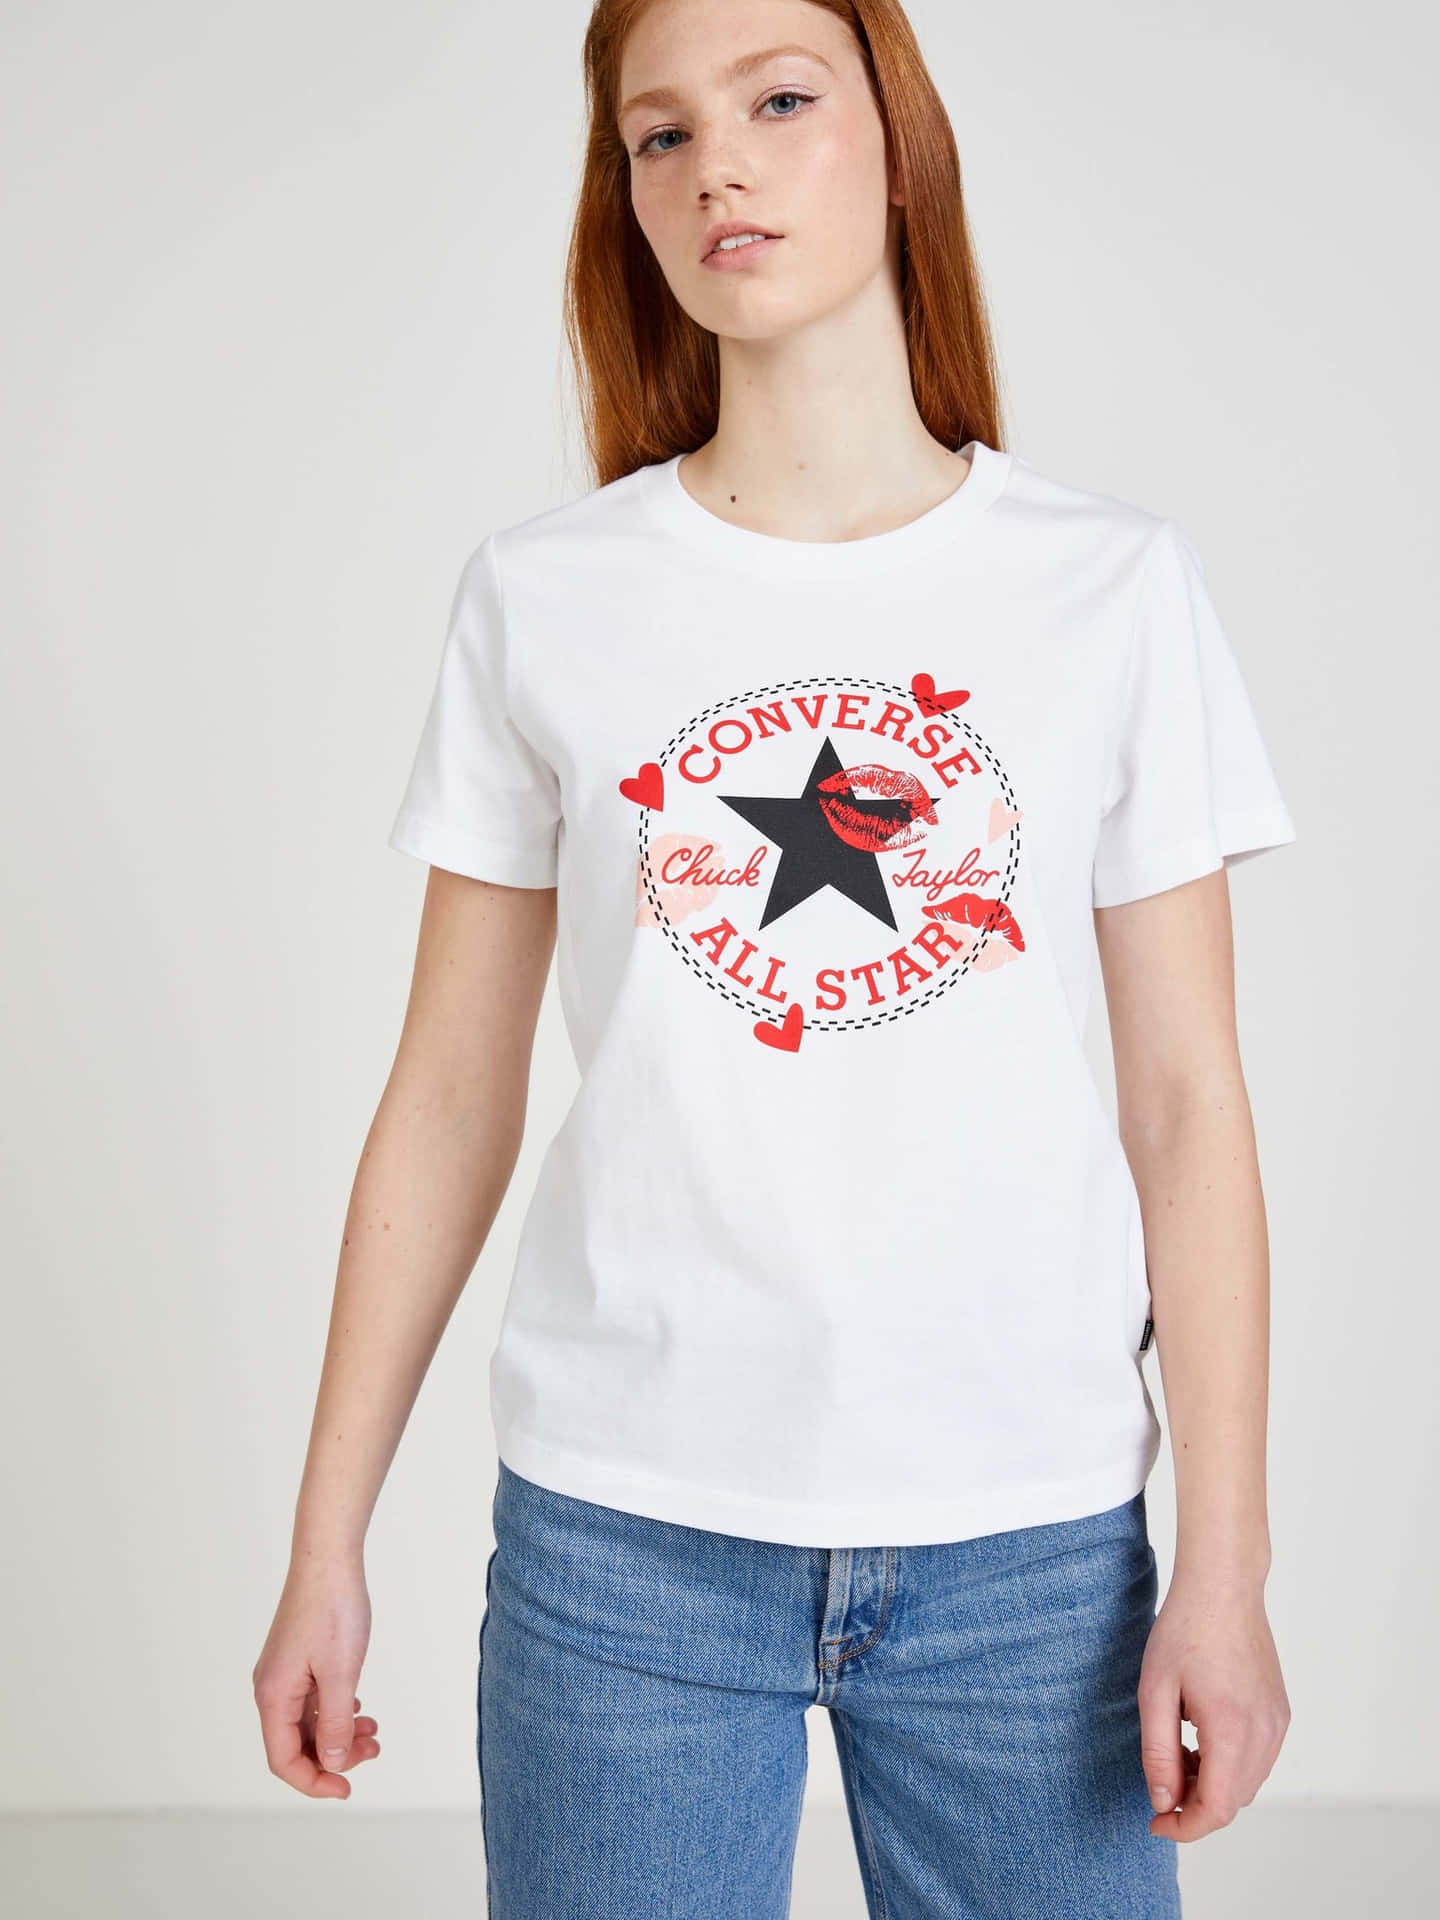 Enkvinde Iført En Hvid T-shirt Med En Stjerne På Den.